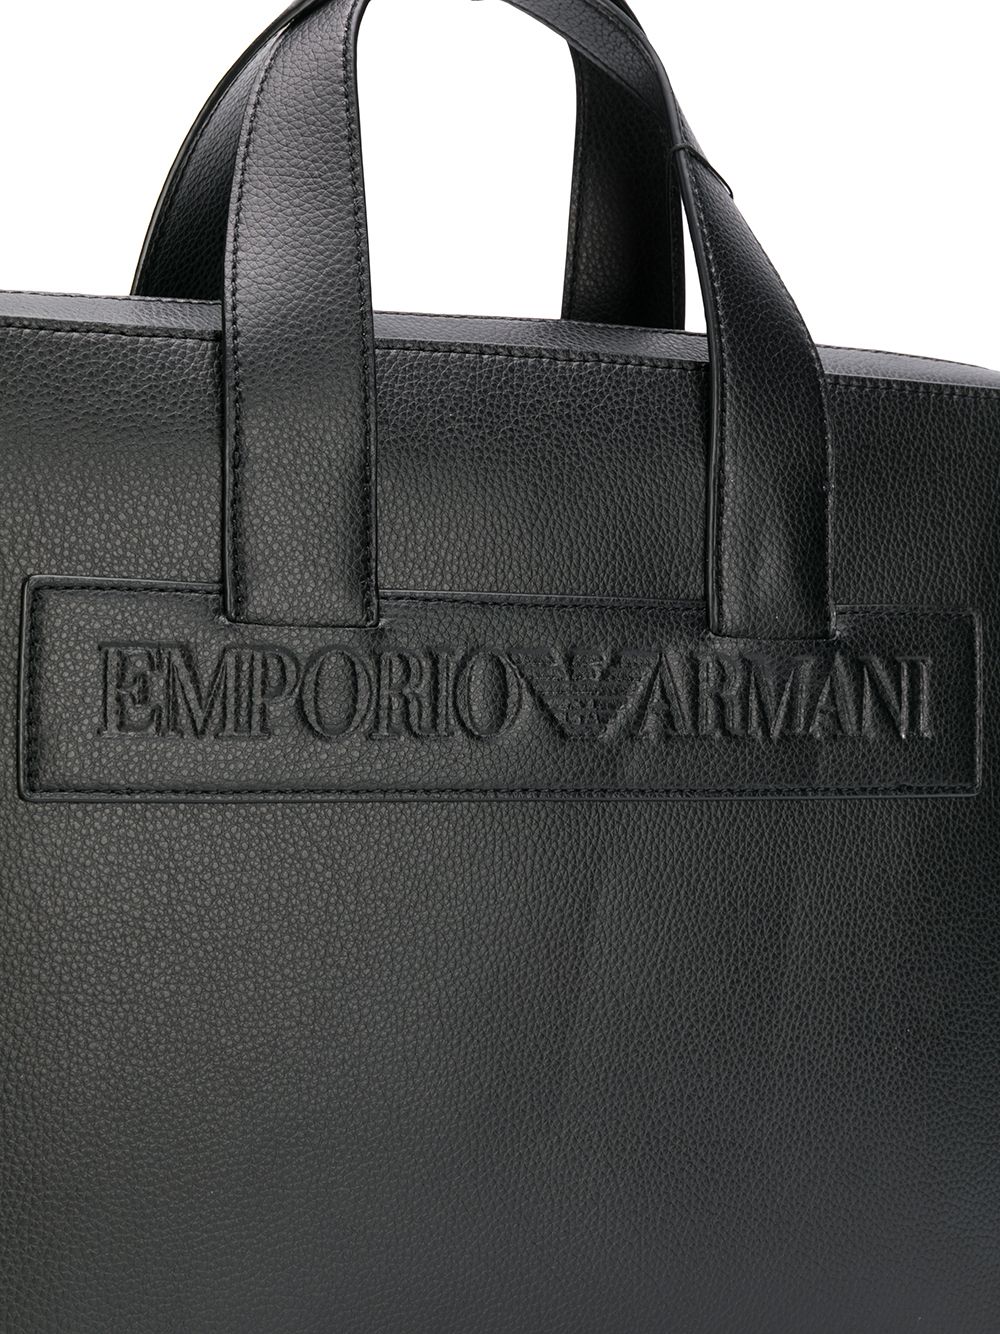 фото Emporio Armani портфель с тисненым логотипом